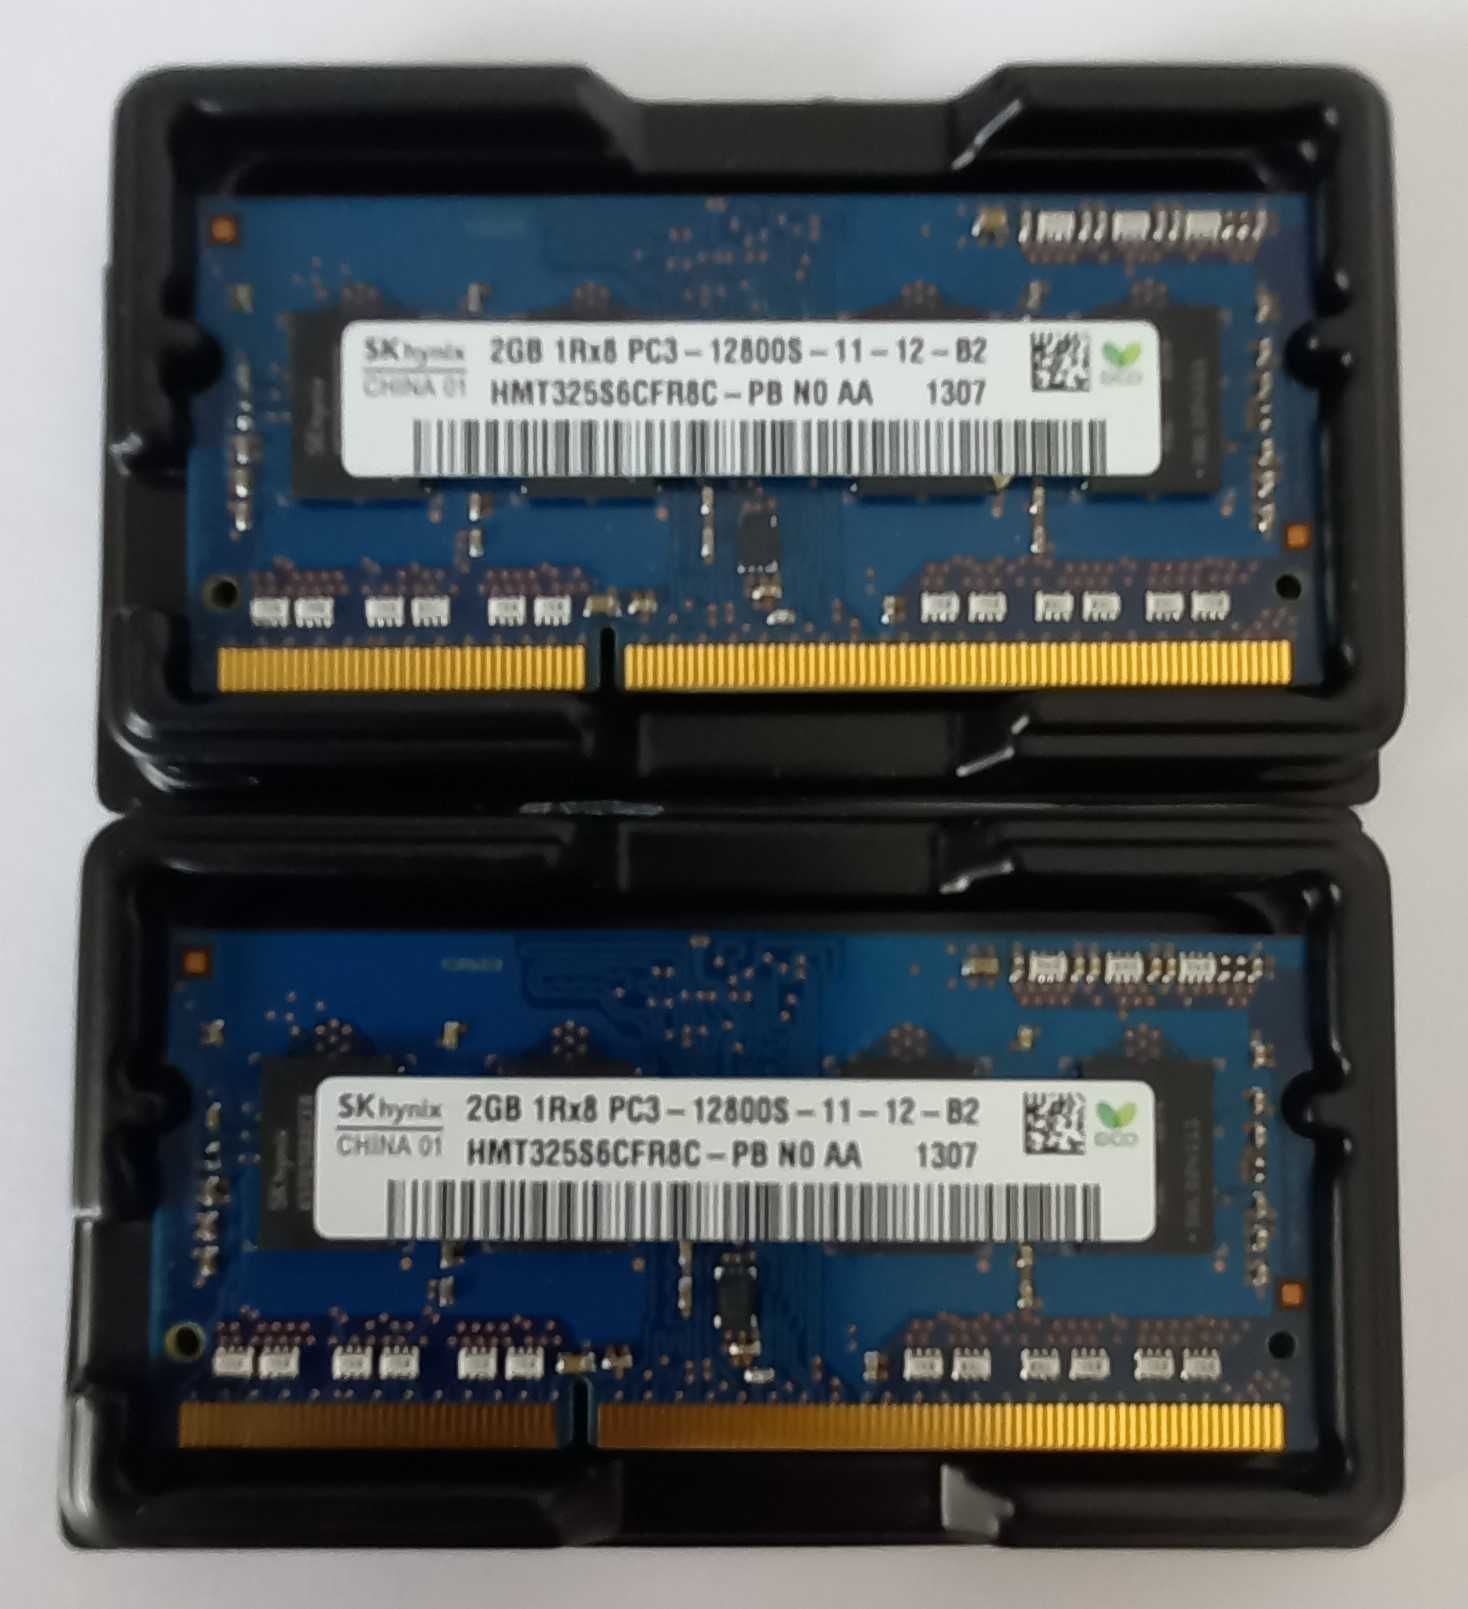 2x Memória RAM SK Hynix 2GB 1RX8 PC3-12800S-11-12-B2